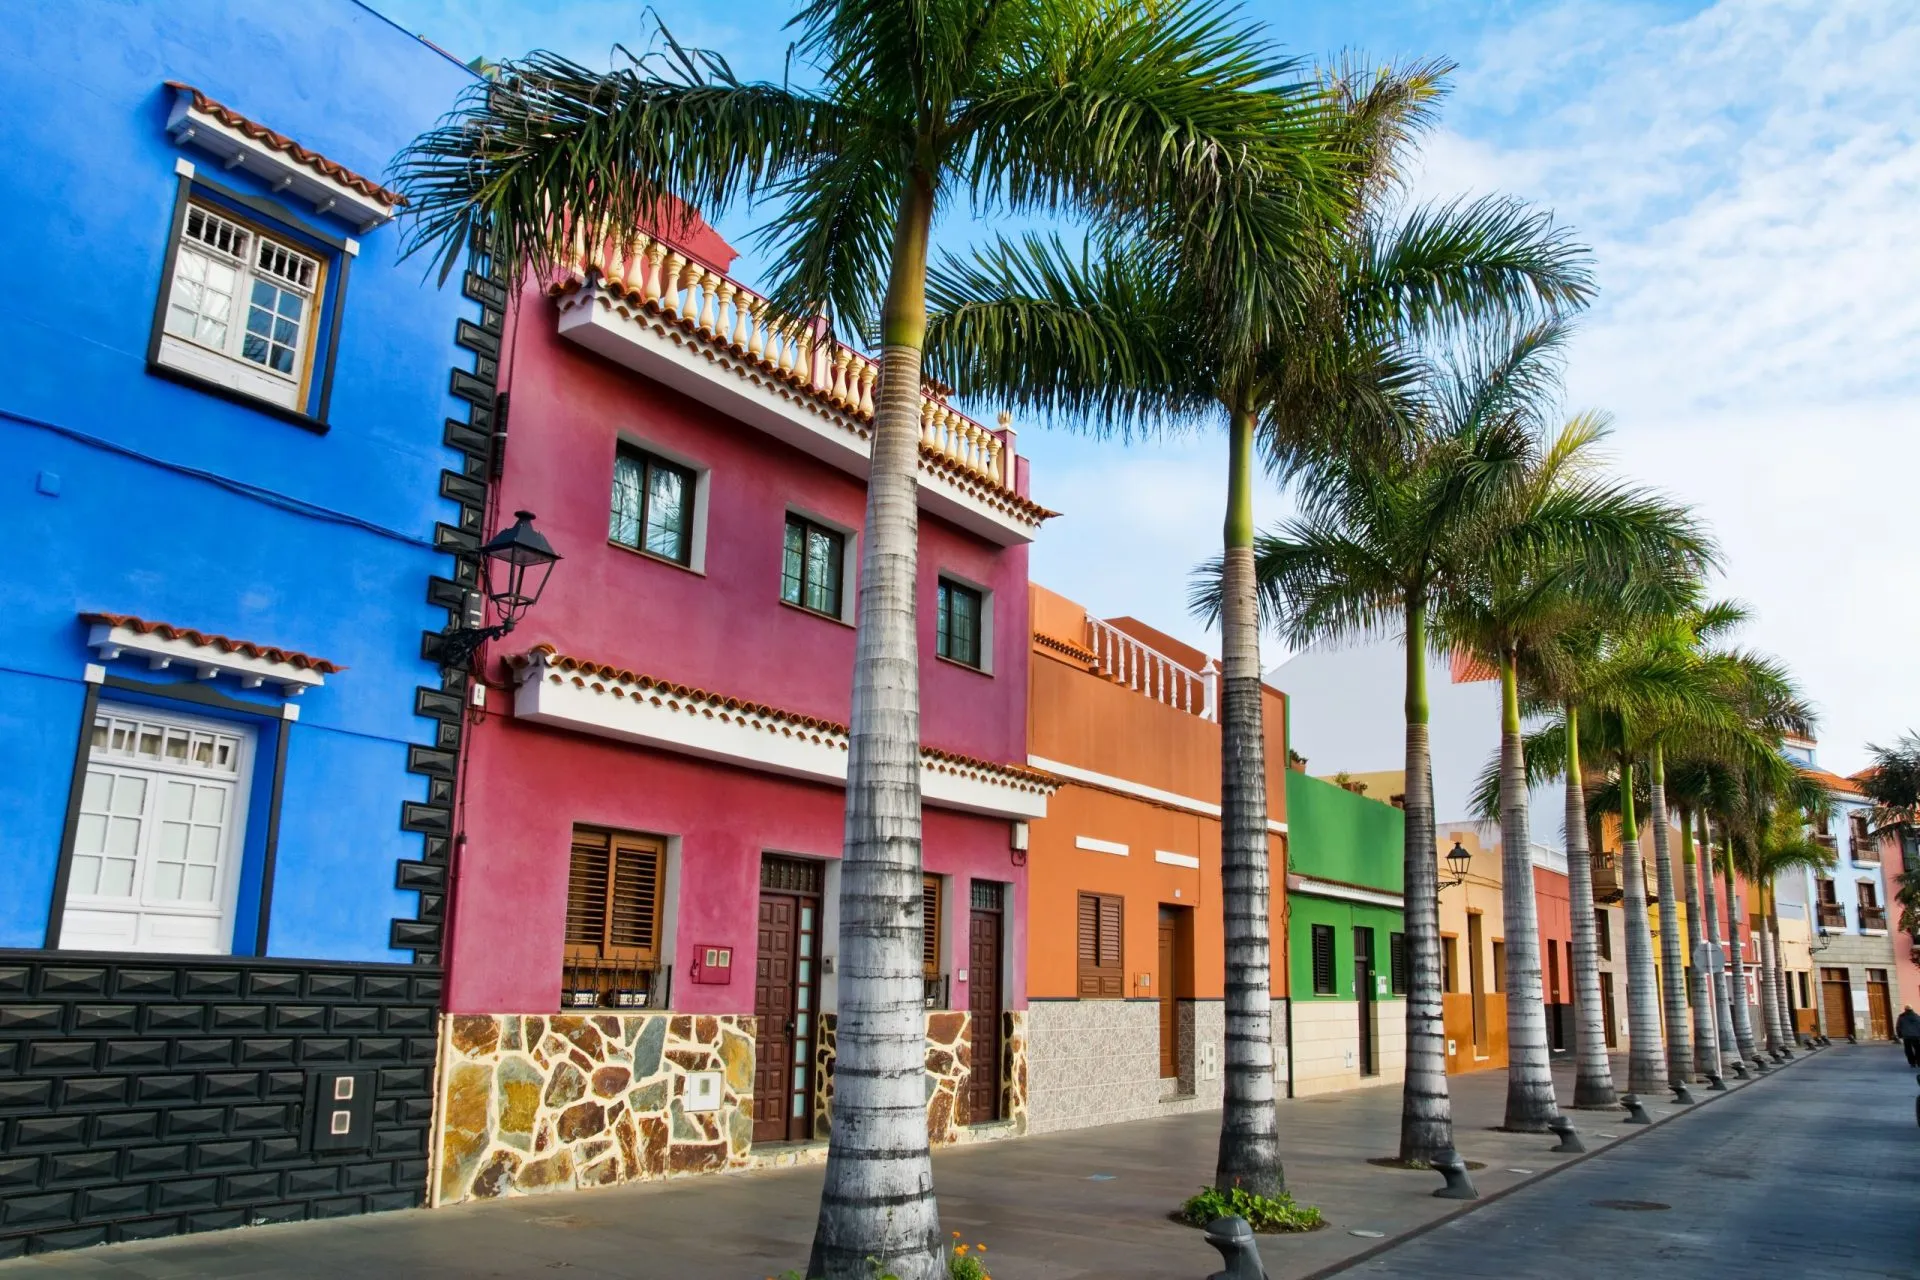 Färgglada hus och palmer på gatan i Puerto de la Cruz, Teneriffa, Kanarieöarna.